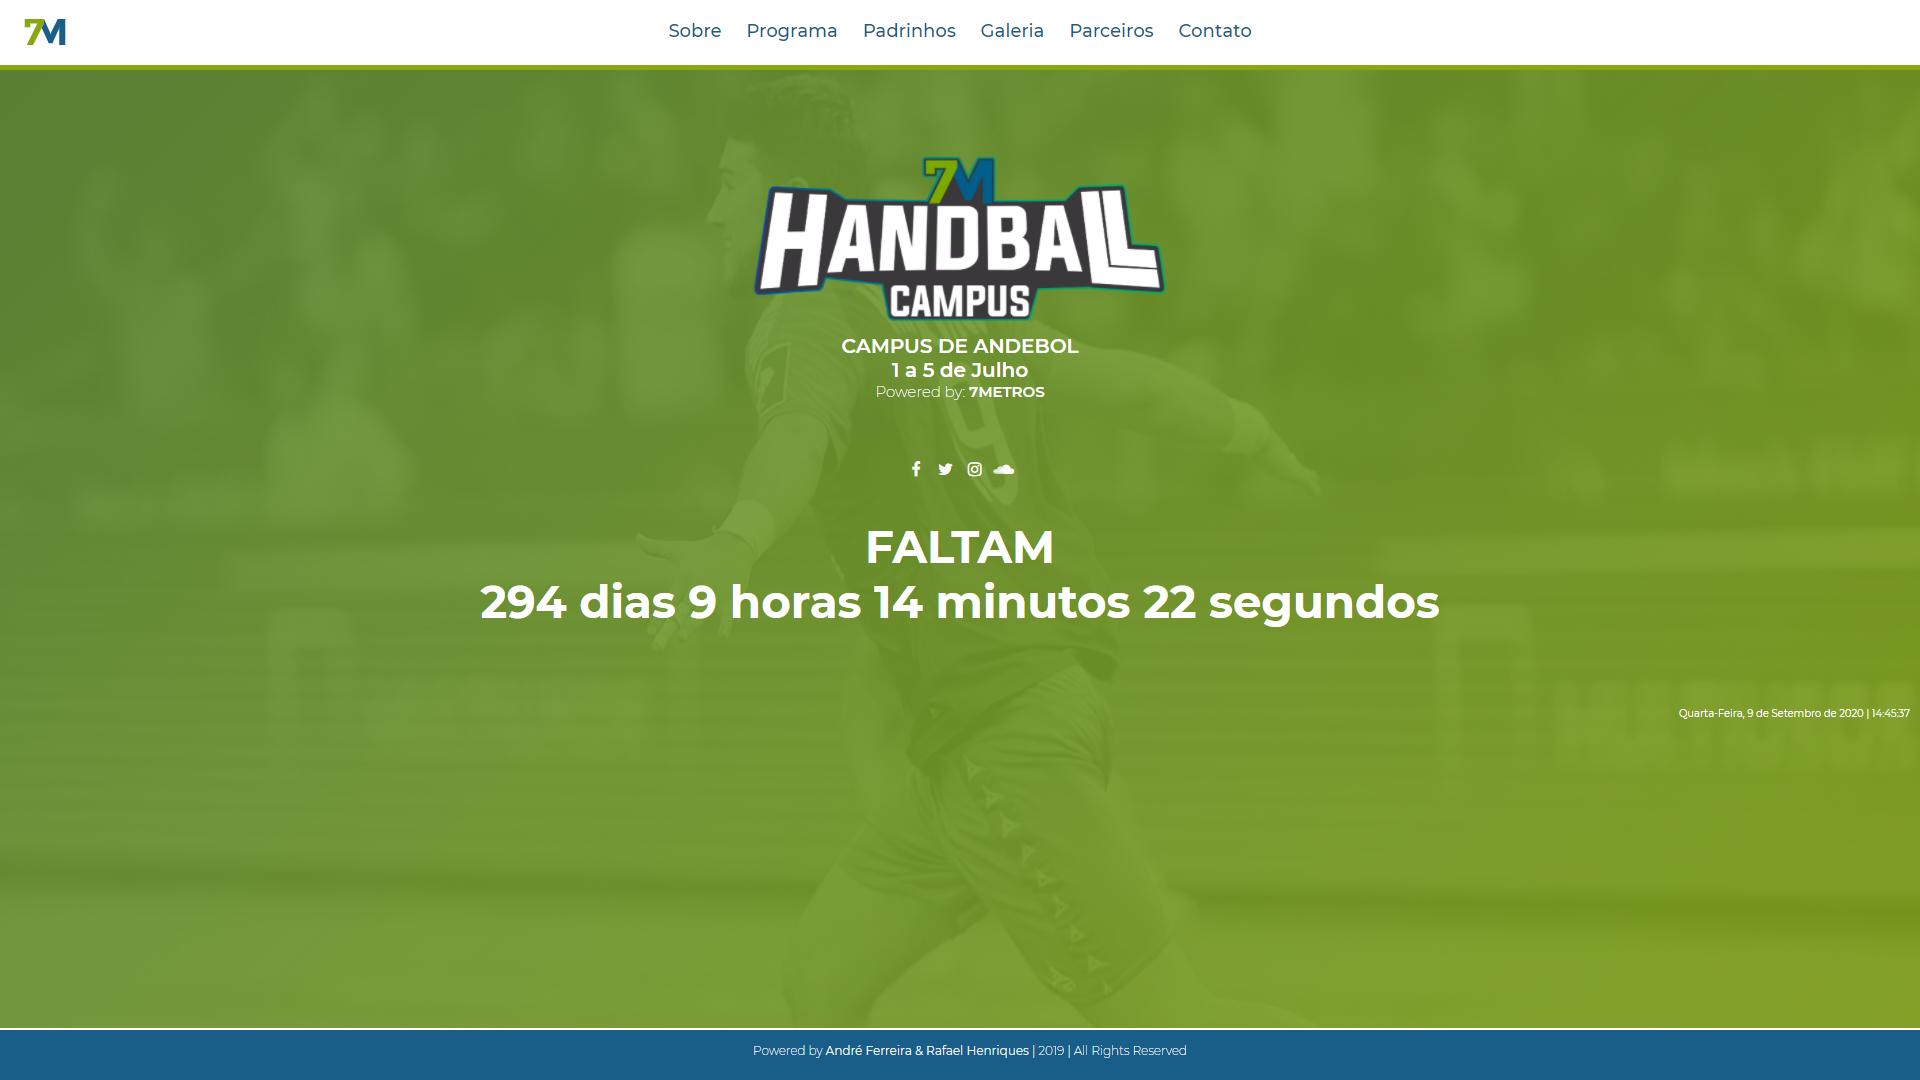 7M_Handball_Campus_1